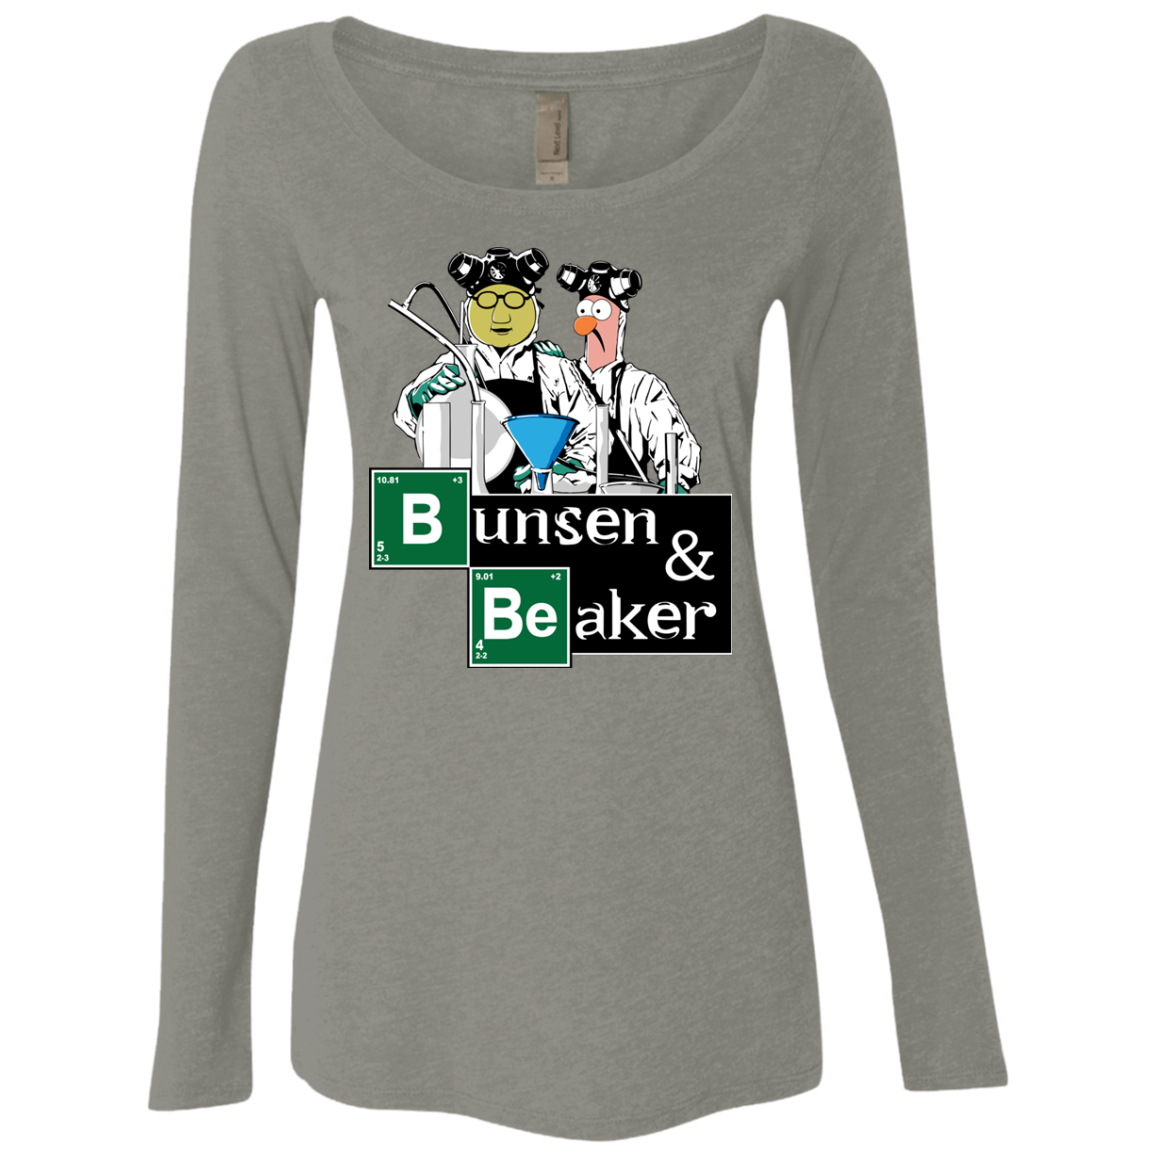 Bunsen & Beaker Women's Triblend Long Sleeve Shirt